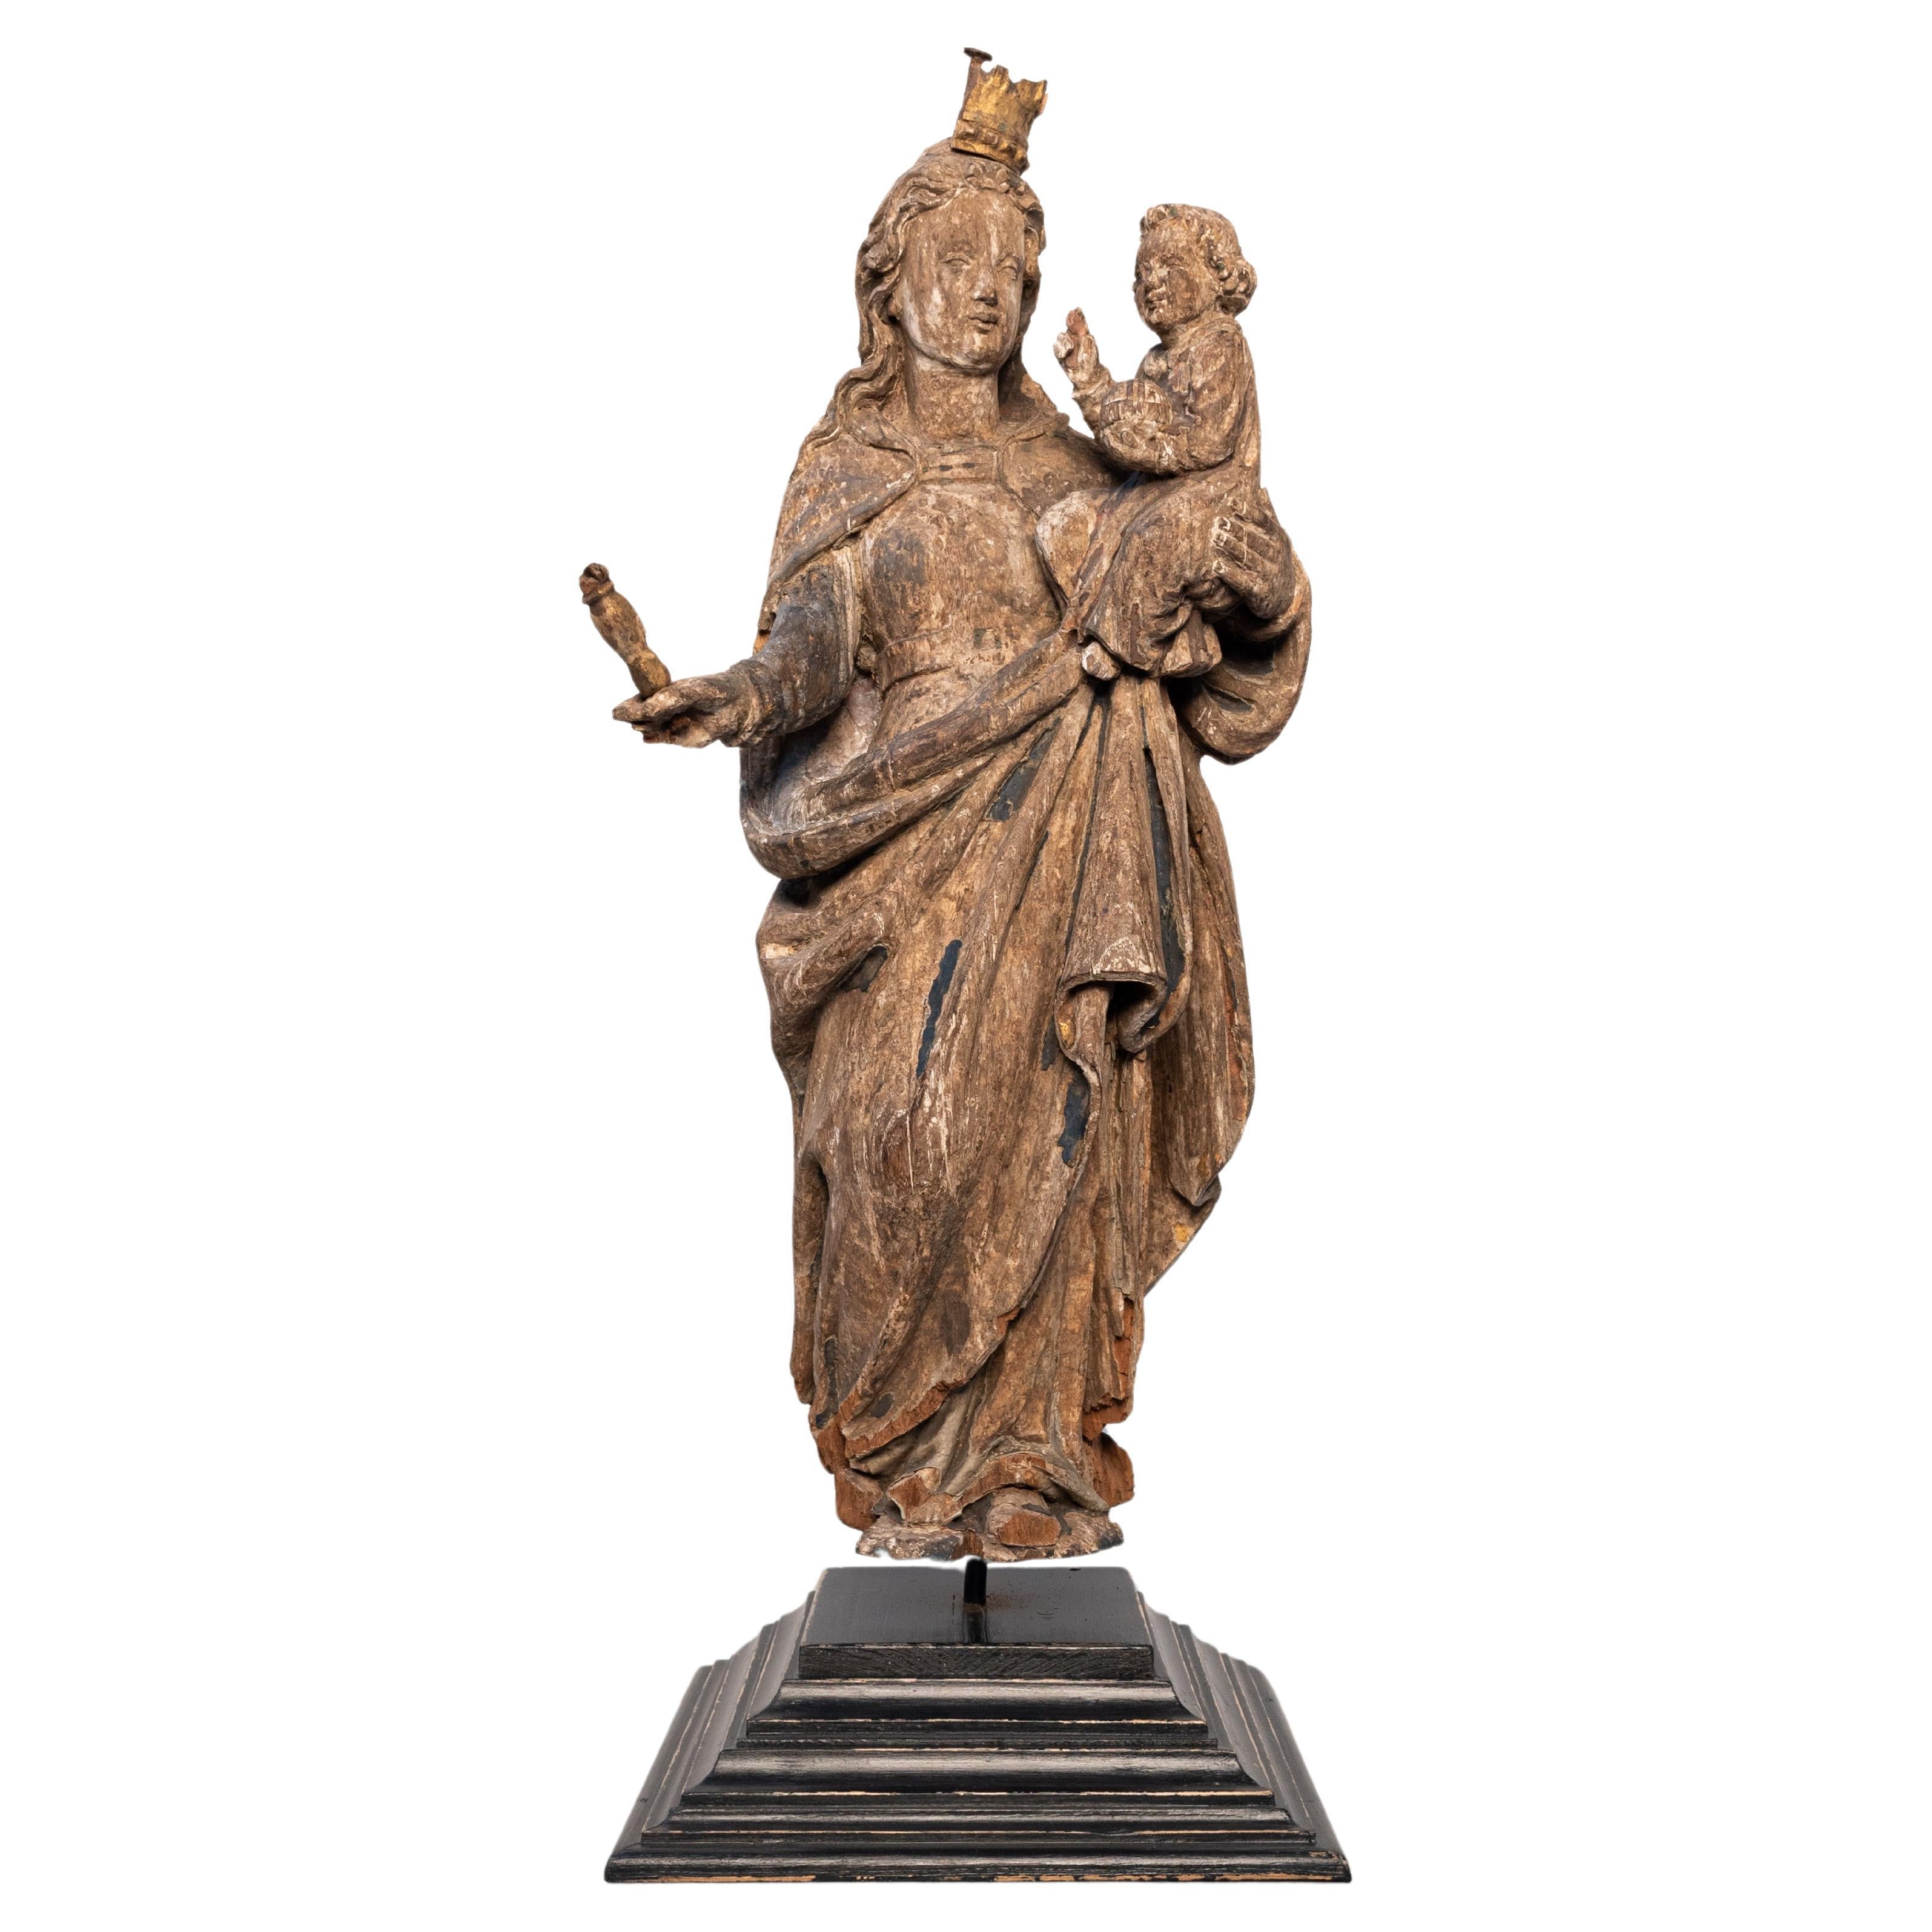 Polychrome, handgeschnitzte Holzstatue der Jungfrau Maria aus dem europäischen 16. Jahrhundert